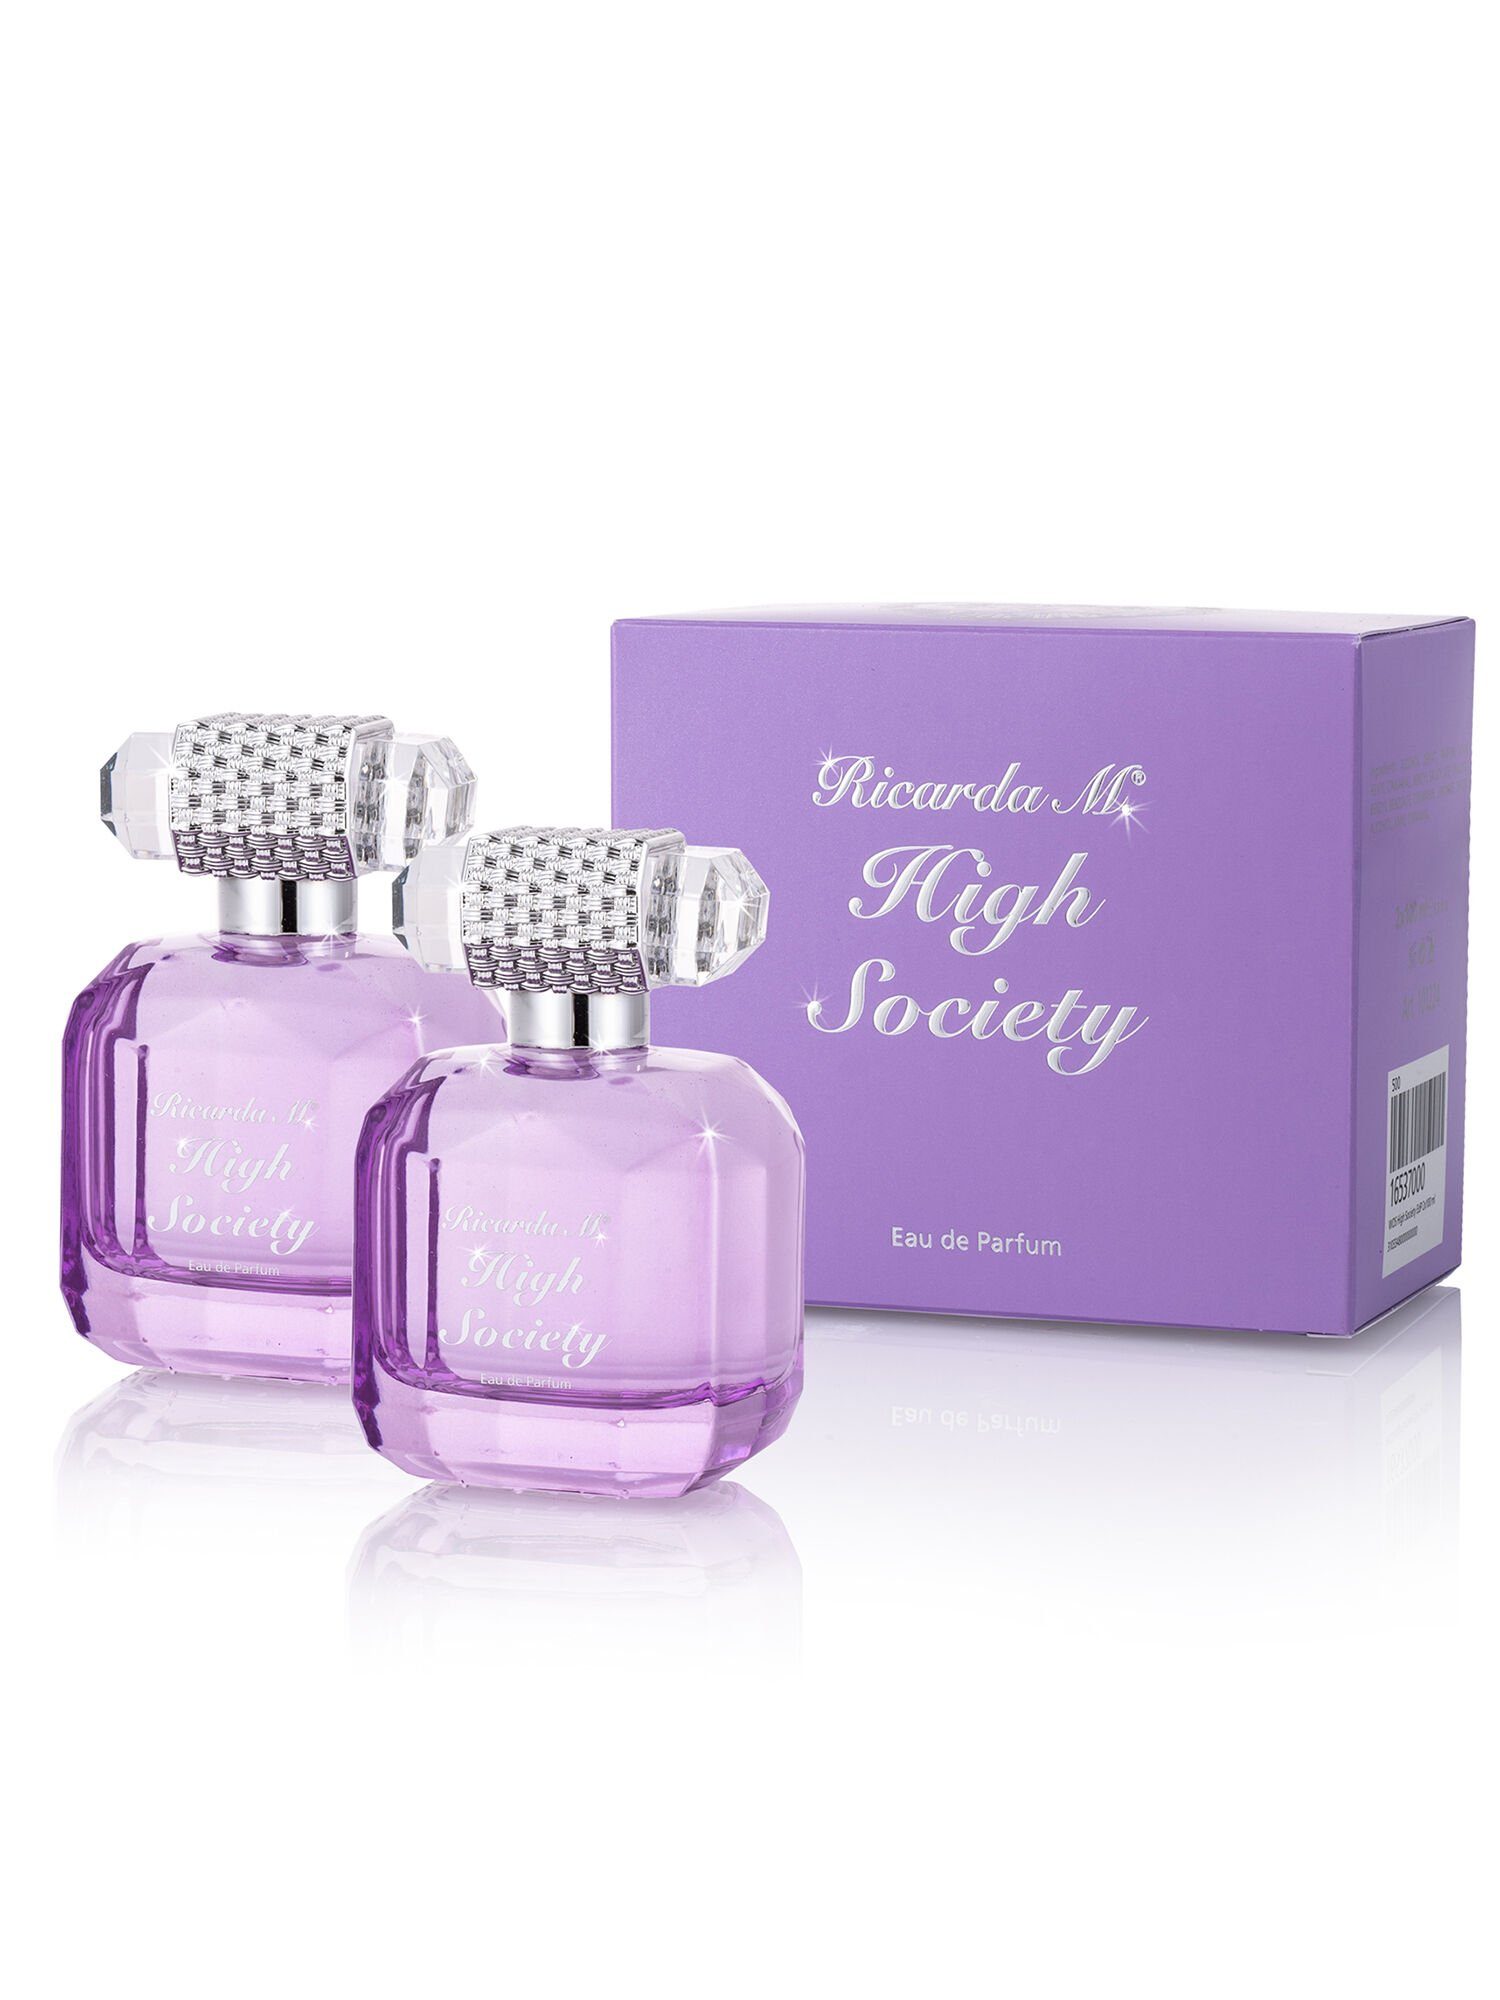 Ricarda M. Eau de Parfum "High Society", exotischer Duft besticht durch seine Sinnlichkeit, 15% Parfümölanteil